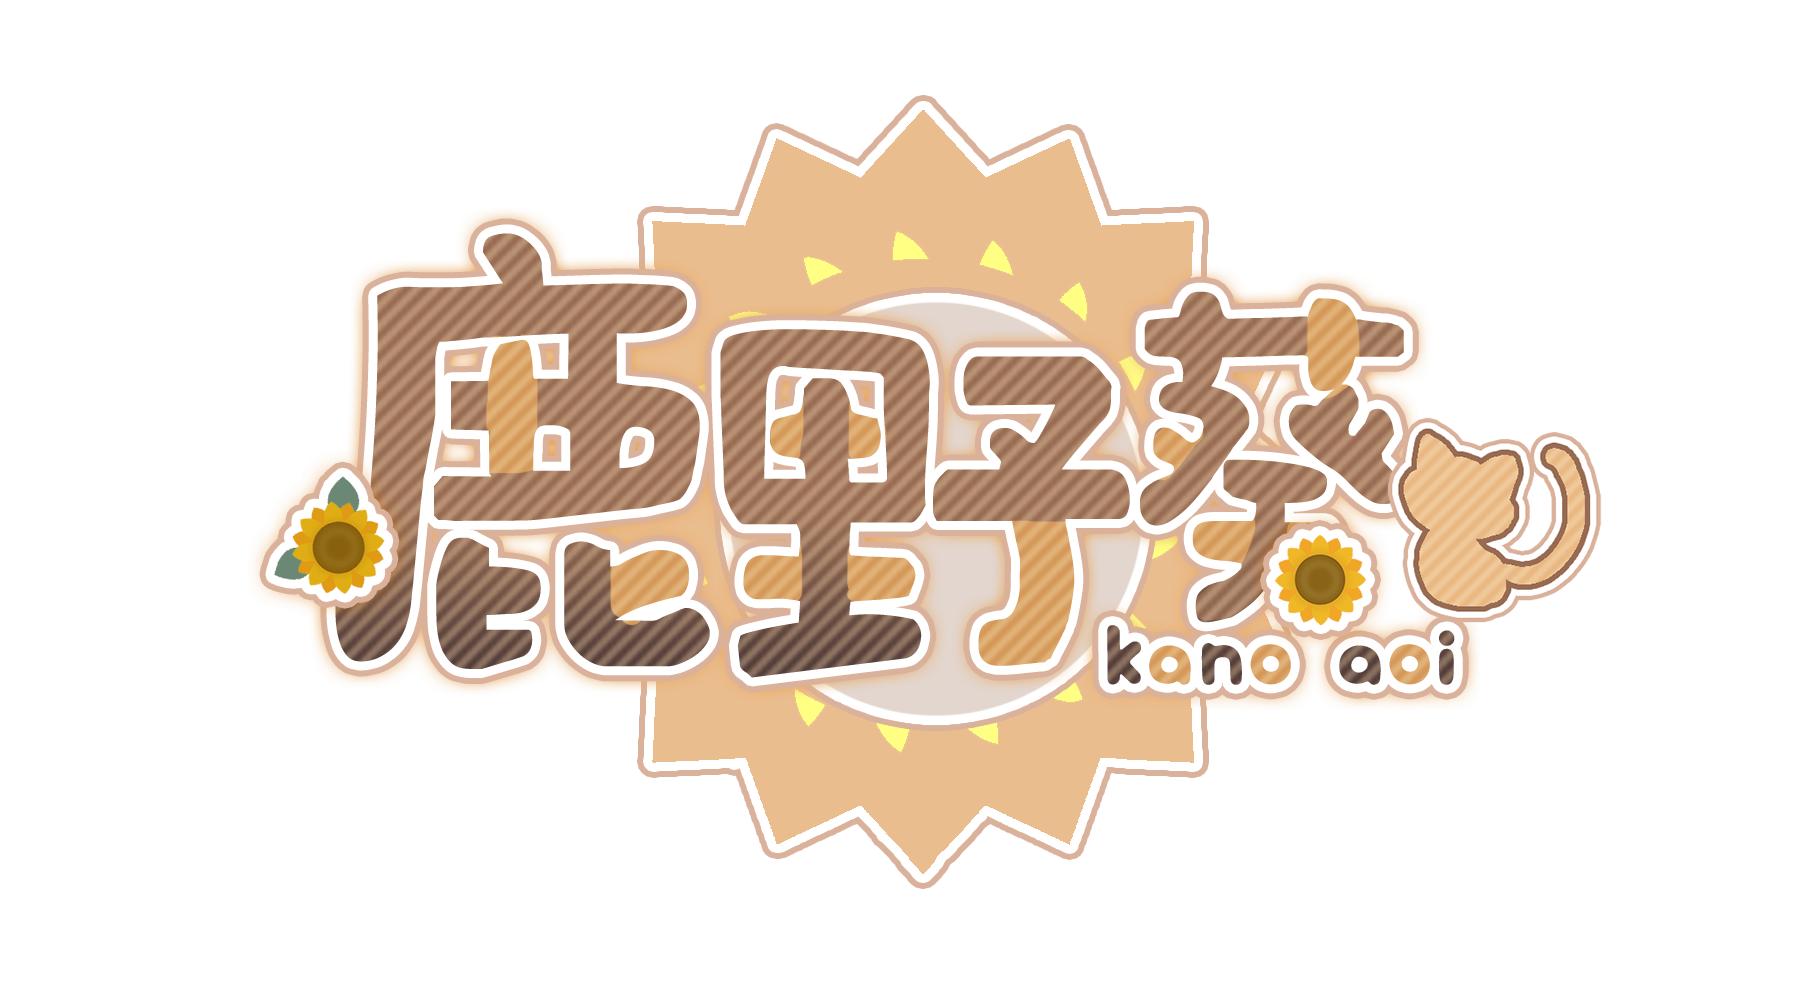 鹿野葵 logo.png